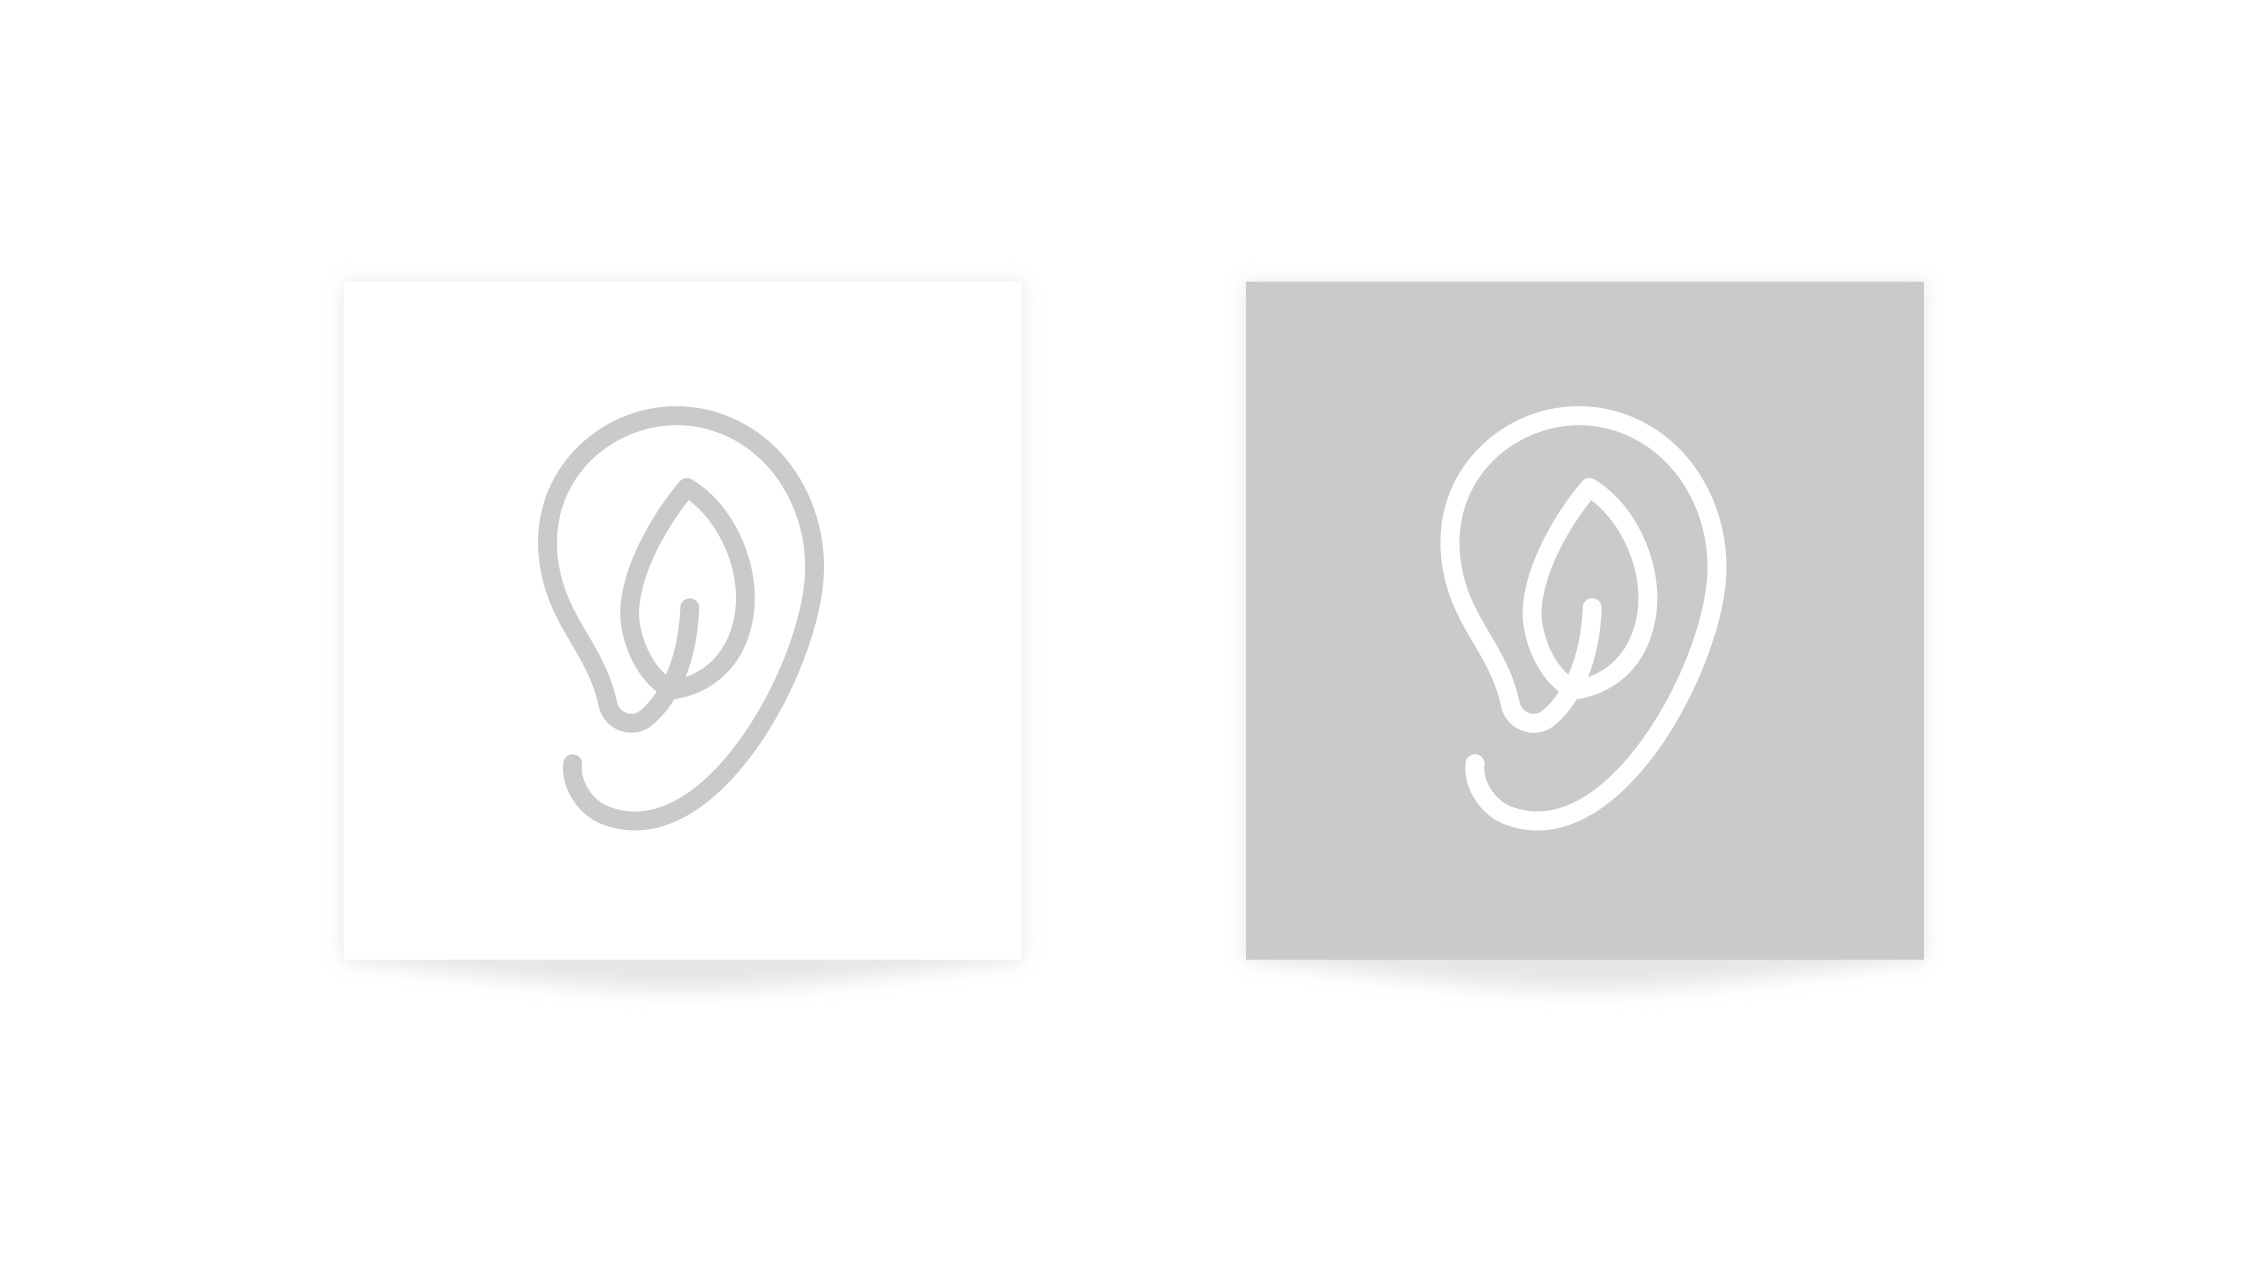 榴莲之声 - 让耳朵去旅行 电台logo vi 设计 厦门vi设计